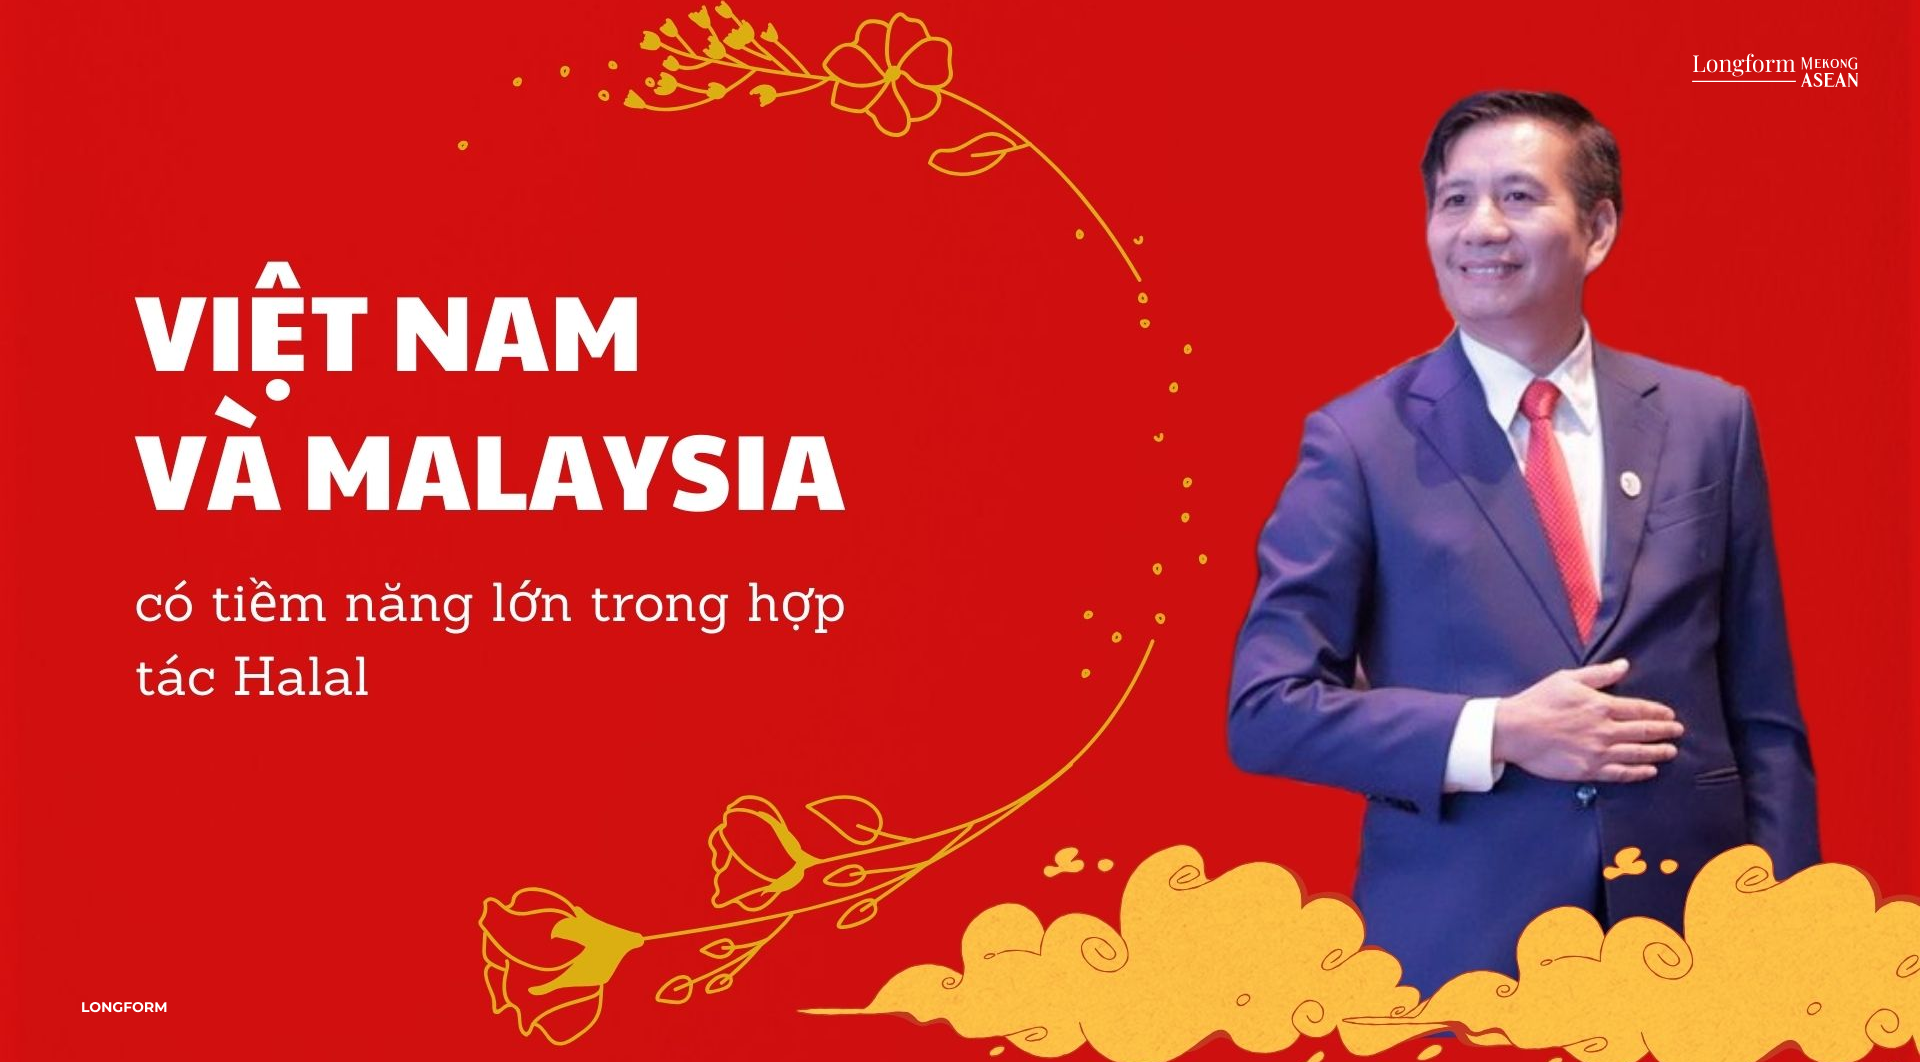 Đại sứ Đinh Ngọc Linh: Việt Nam - Malaysia có tiềm năng lớn trong hợp tác Halal 